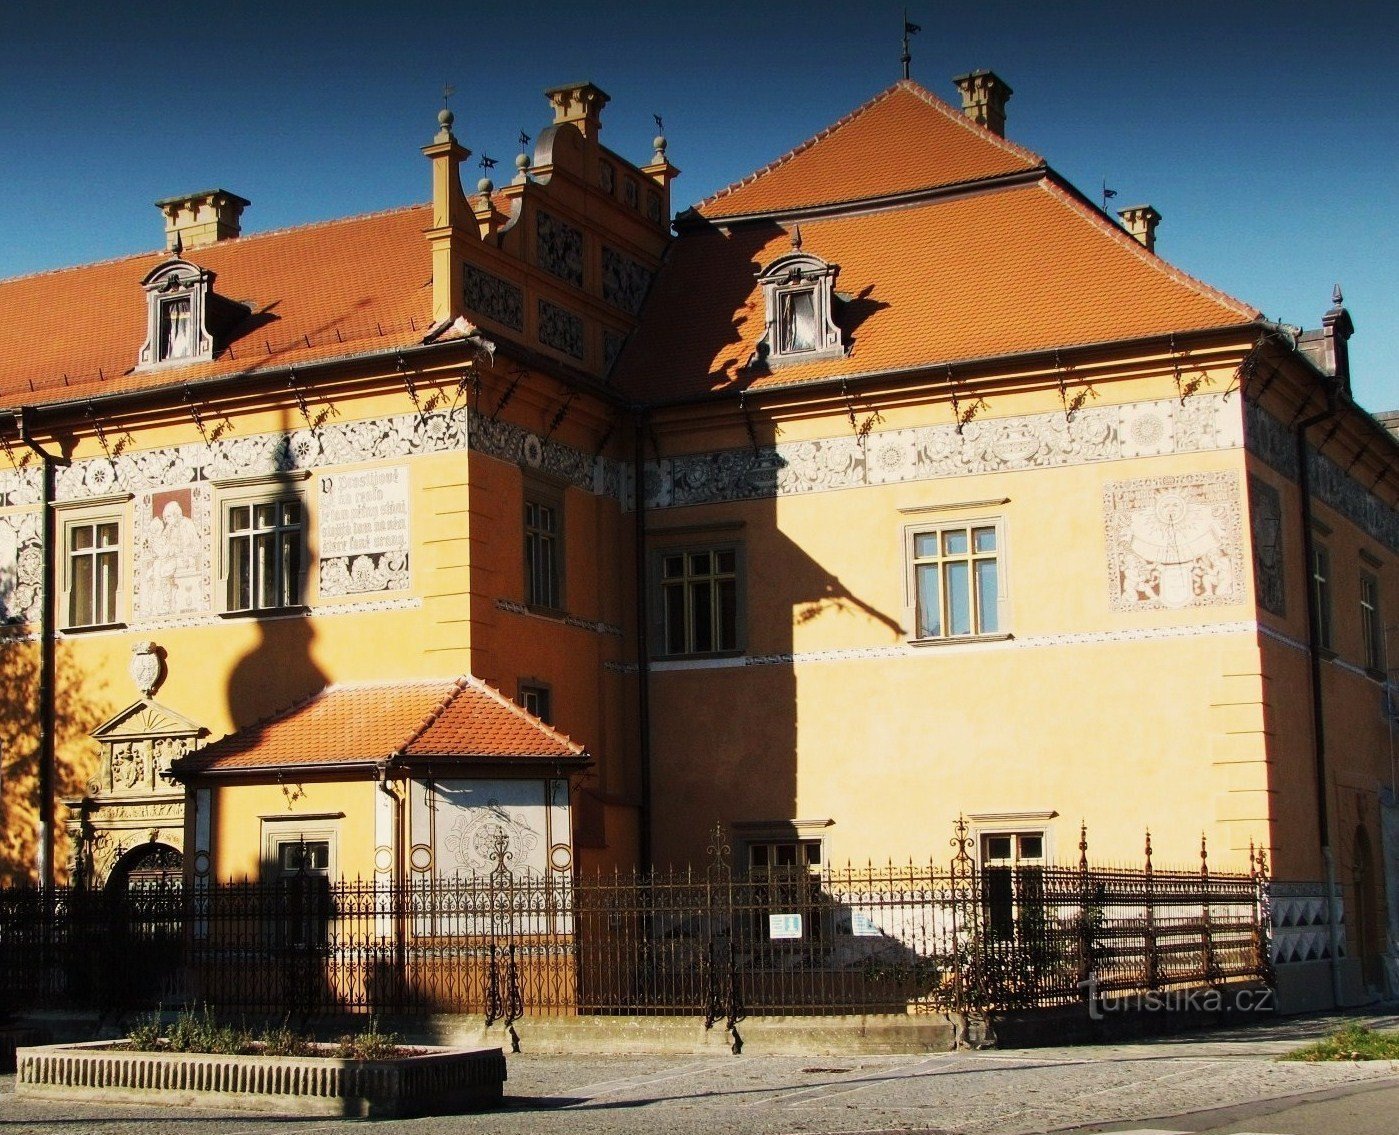 Prostějov nevezetessége - reneszánsz kastély